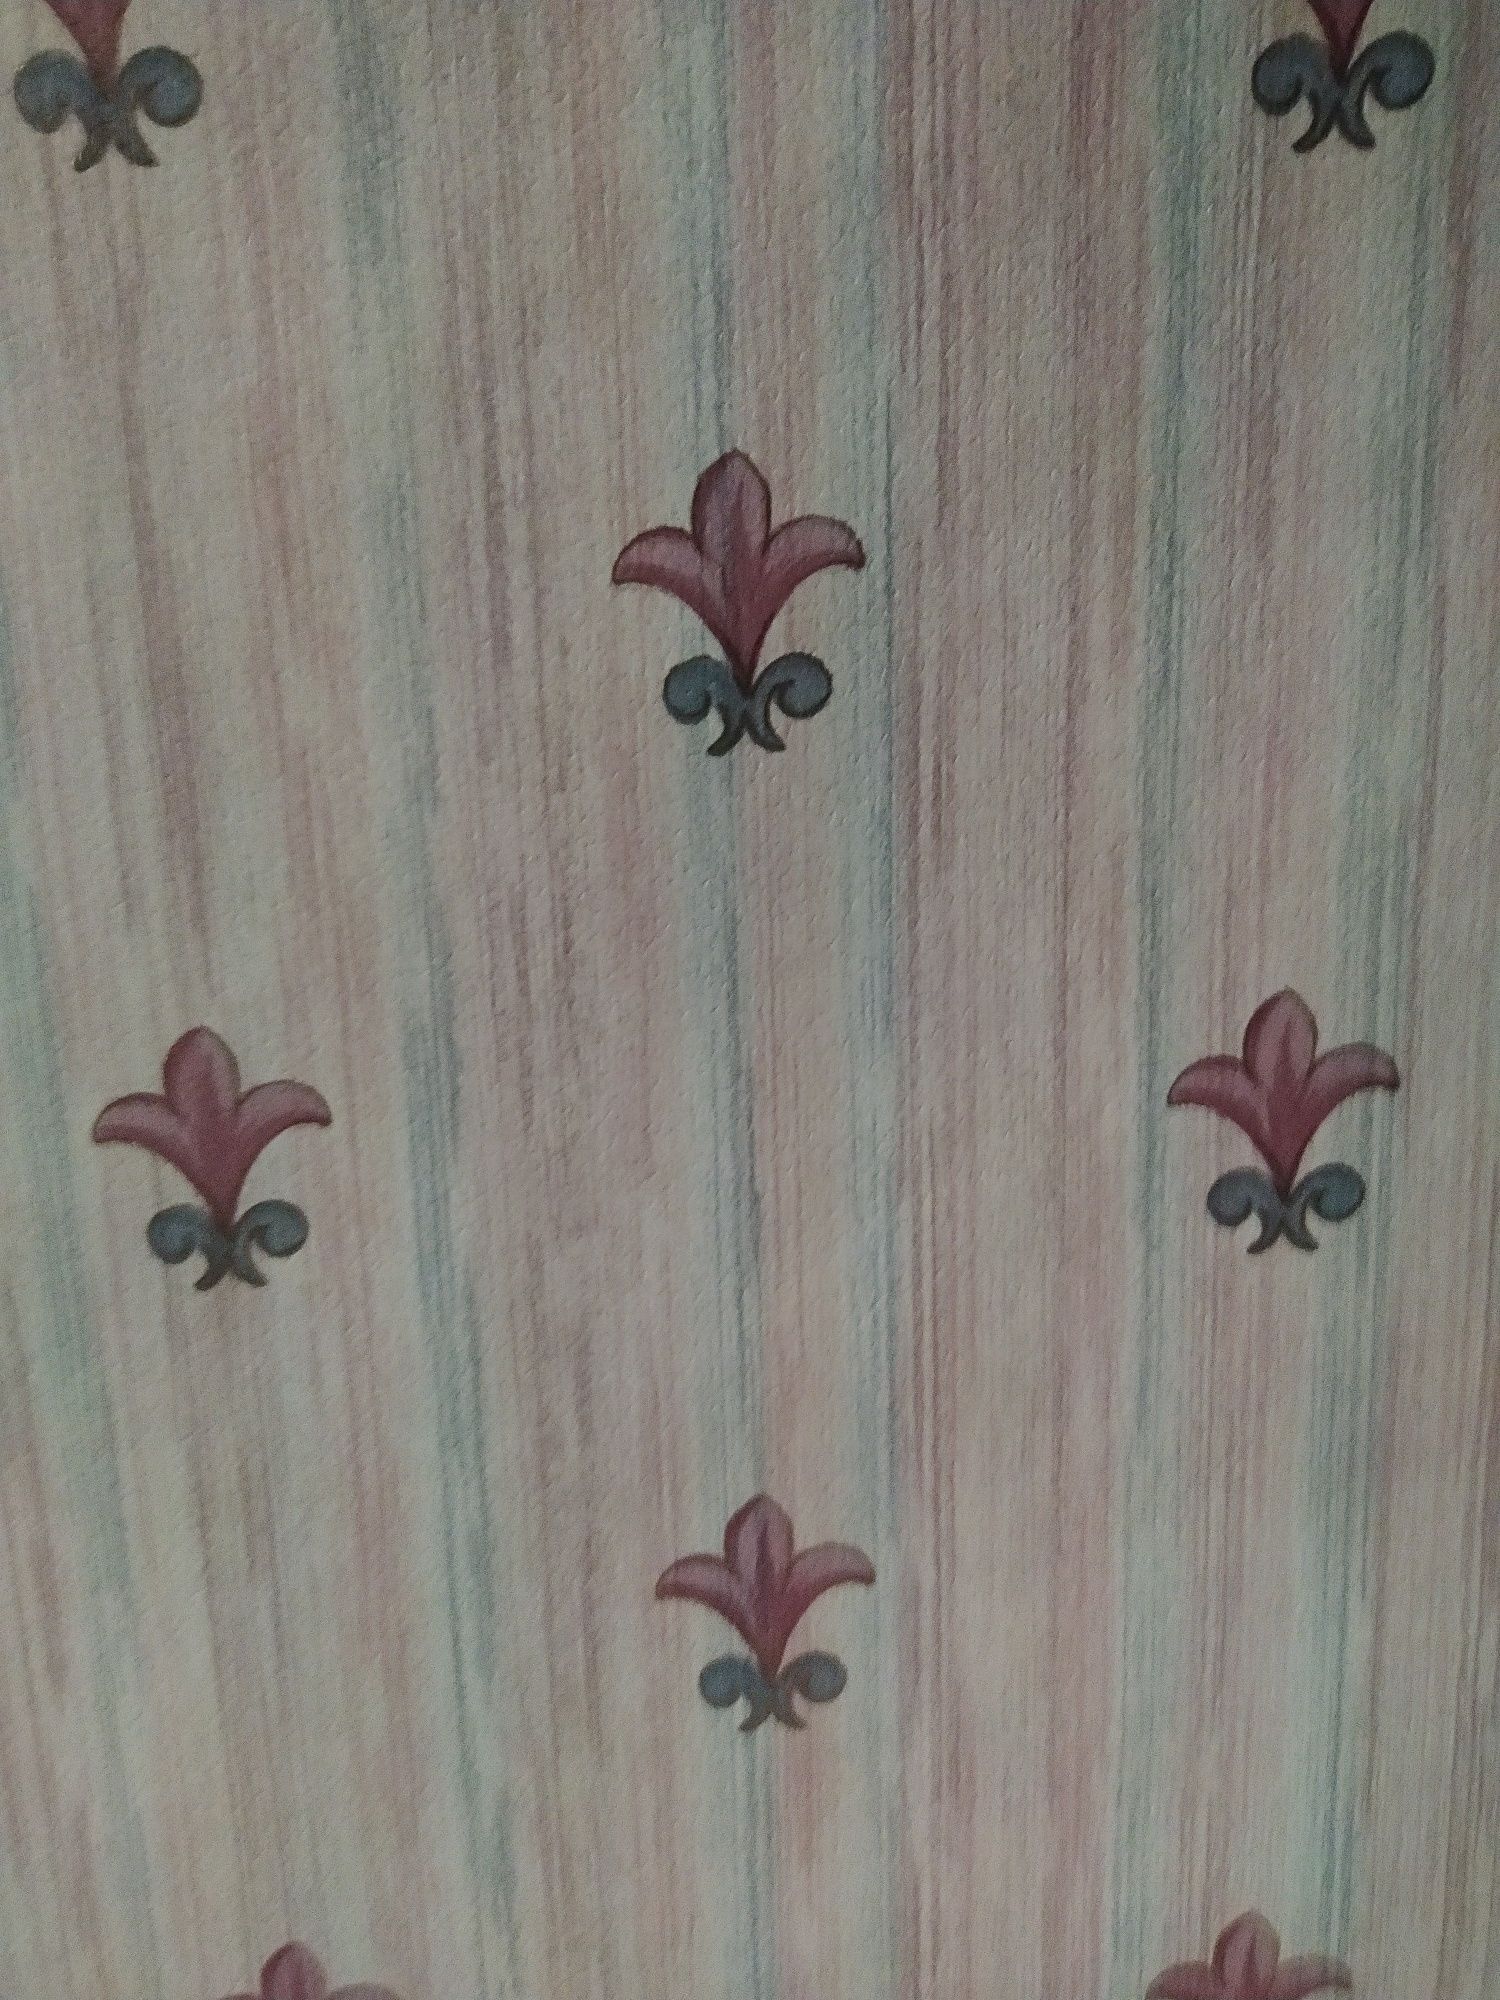 rolos de papel parede e barras embalagem original (flor de lis)